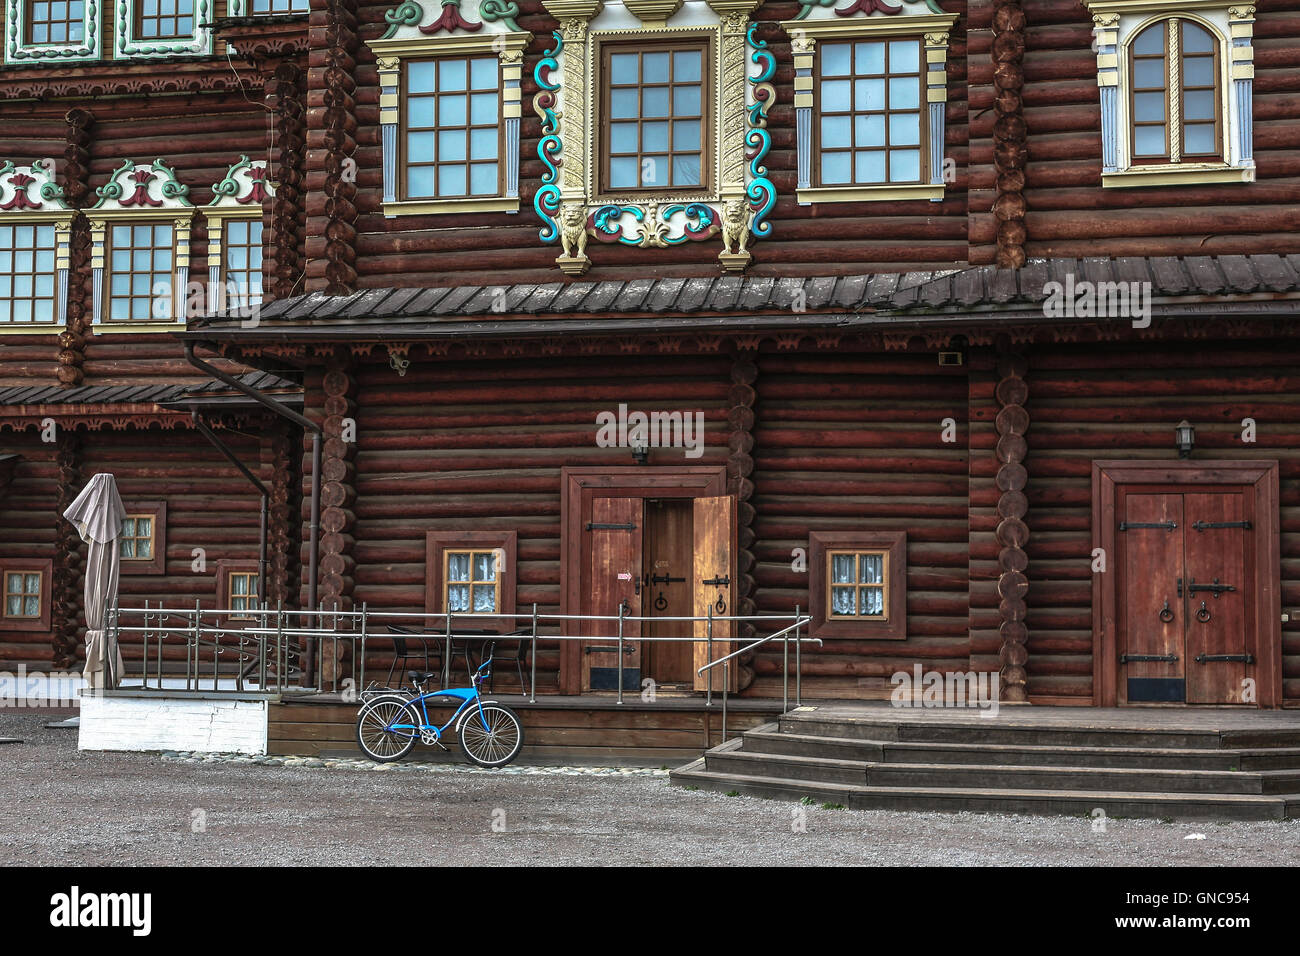 Qualcuno è arrivato al palazzo imperiale di Alexey Romanov in Kolomna a Mosca in bicicletta. Foto Stock